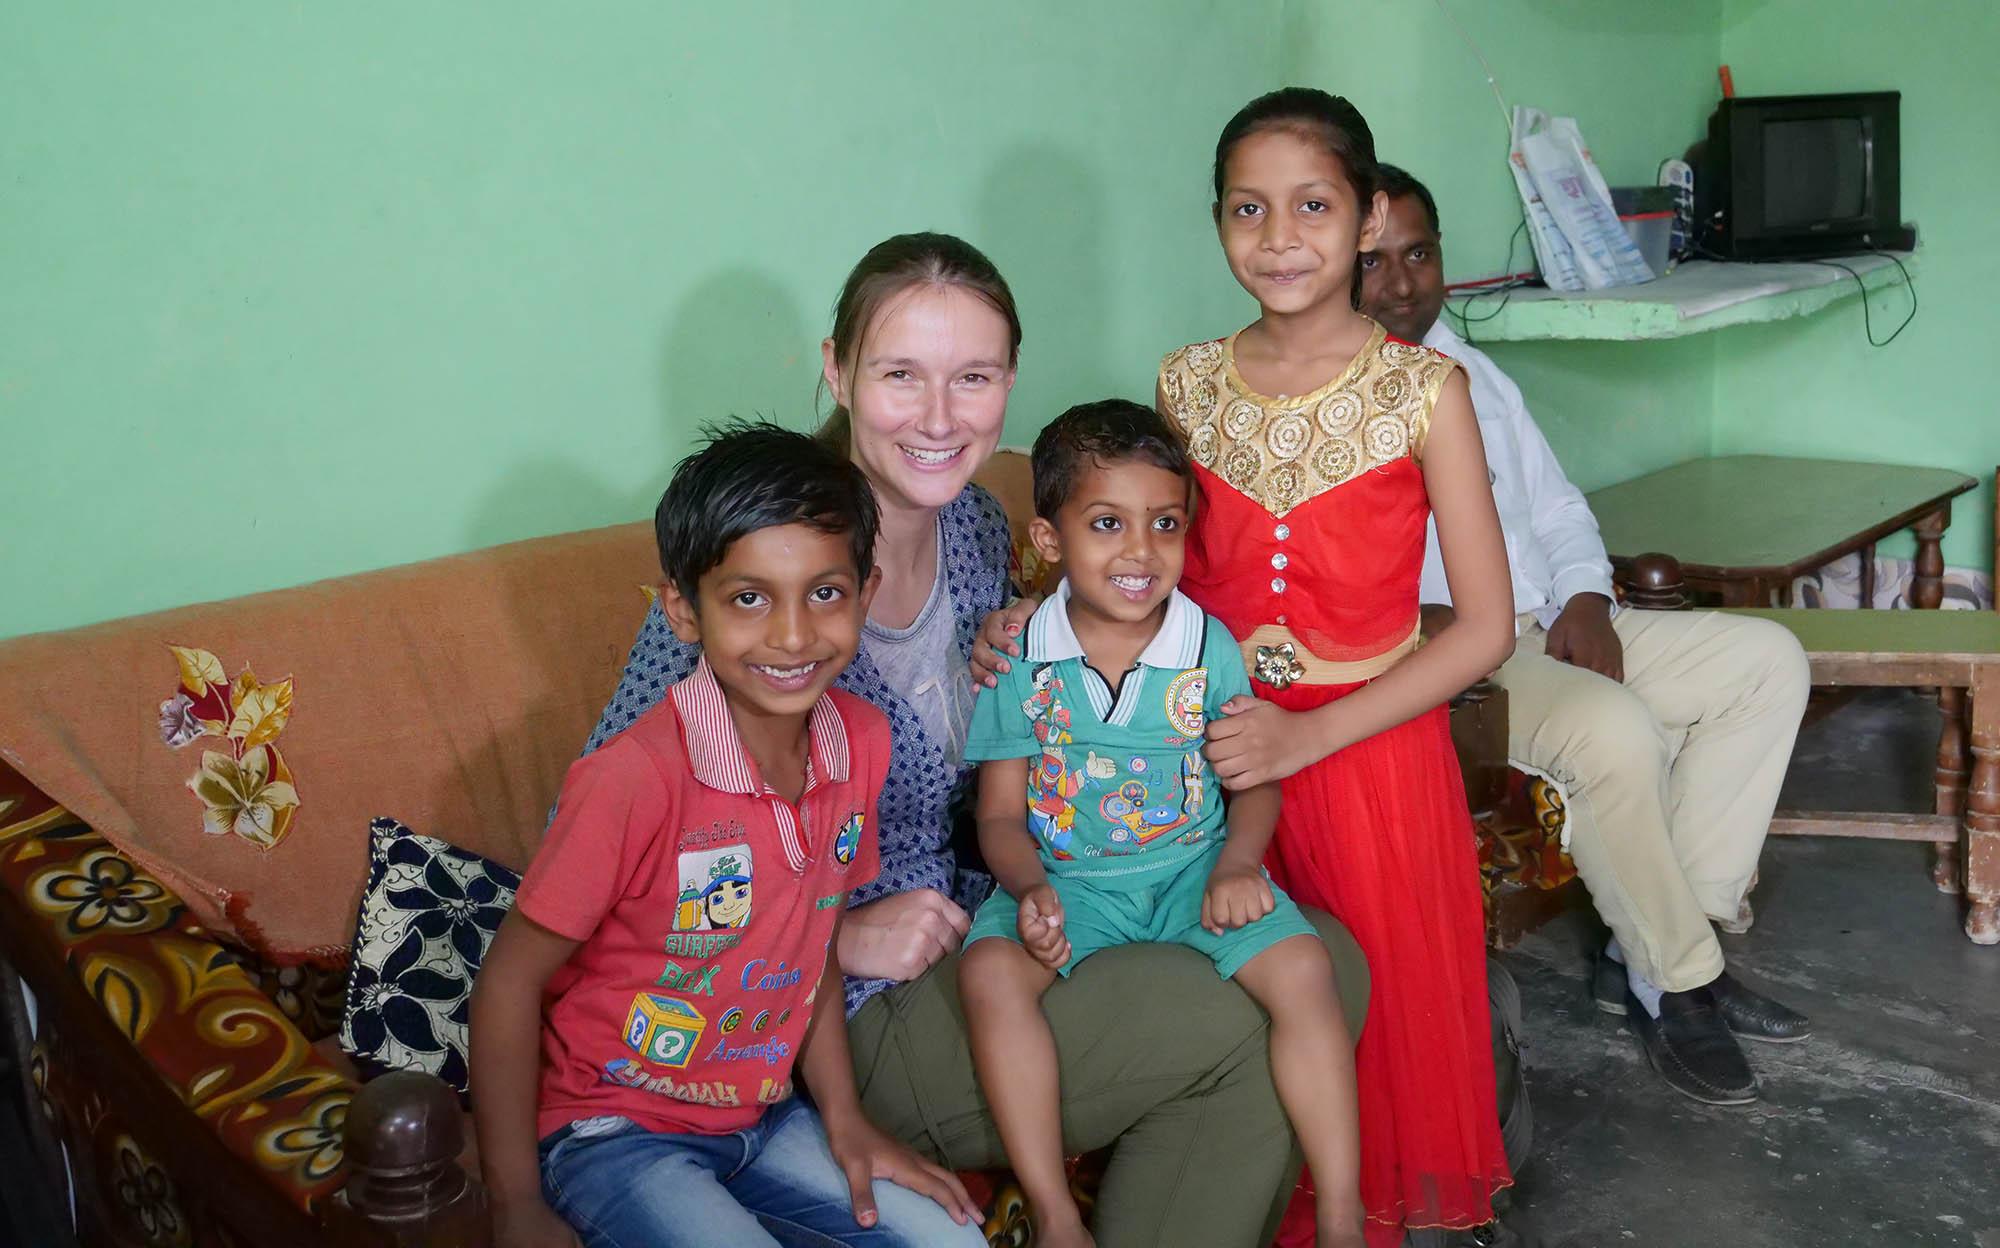 Dhara Children Academy, India - Projektbesuch in Indien! - Ein Bildungsprojekt